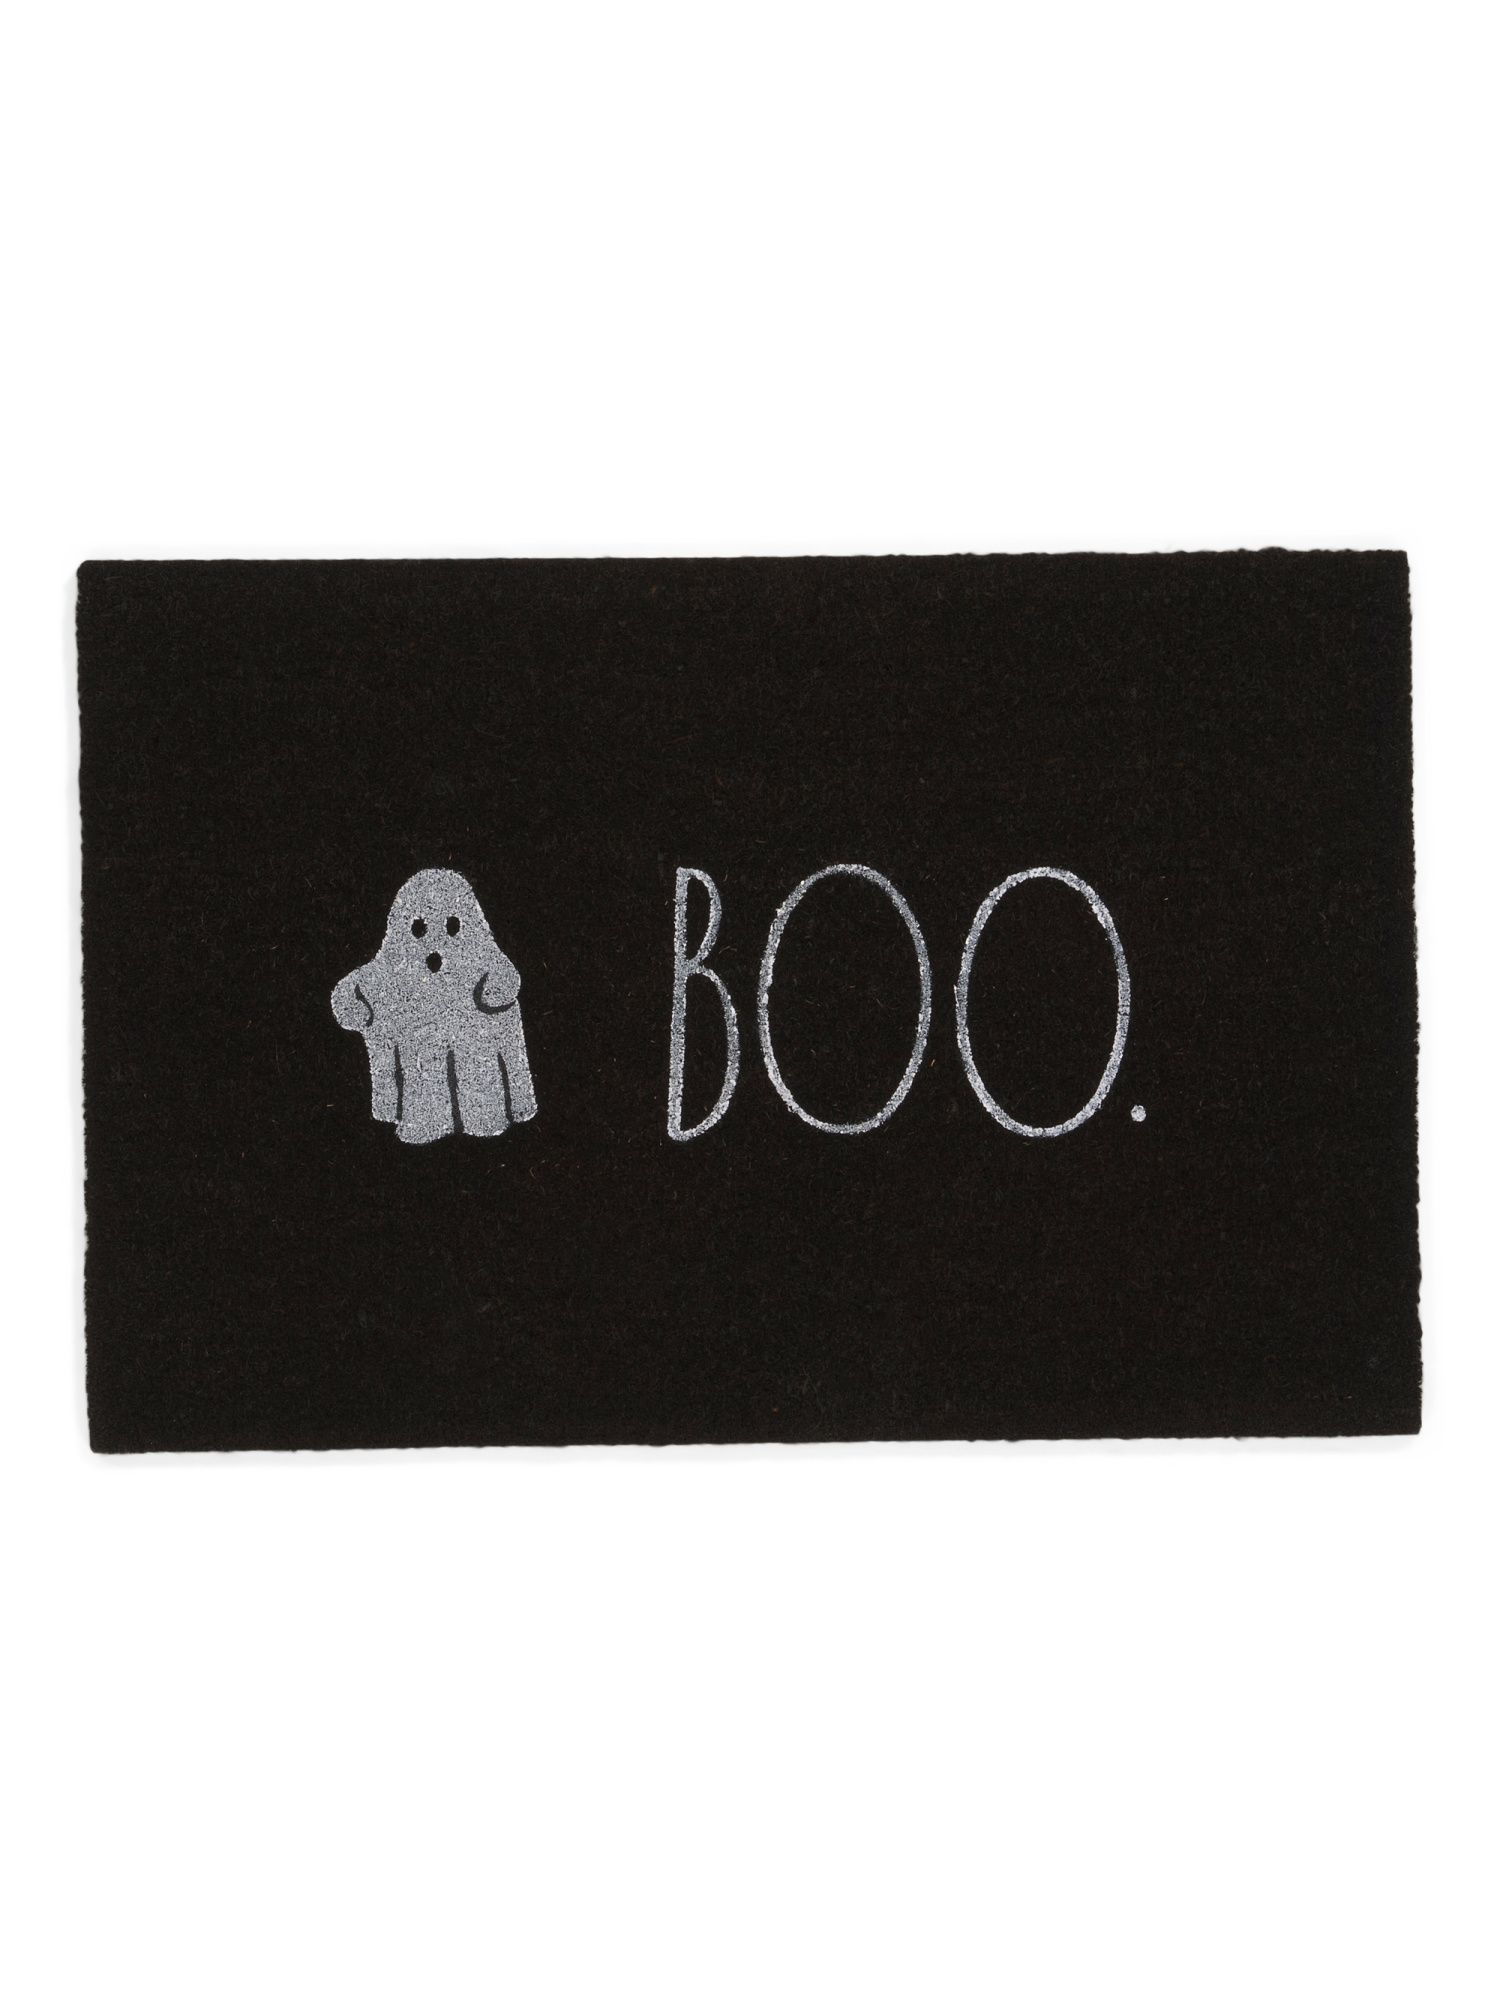 24x36 Boo Doormat | TJ Maxx